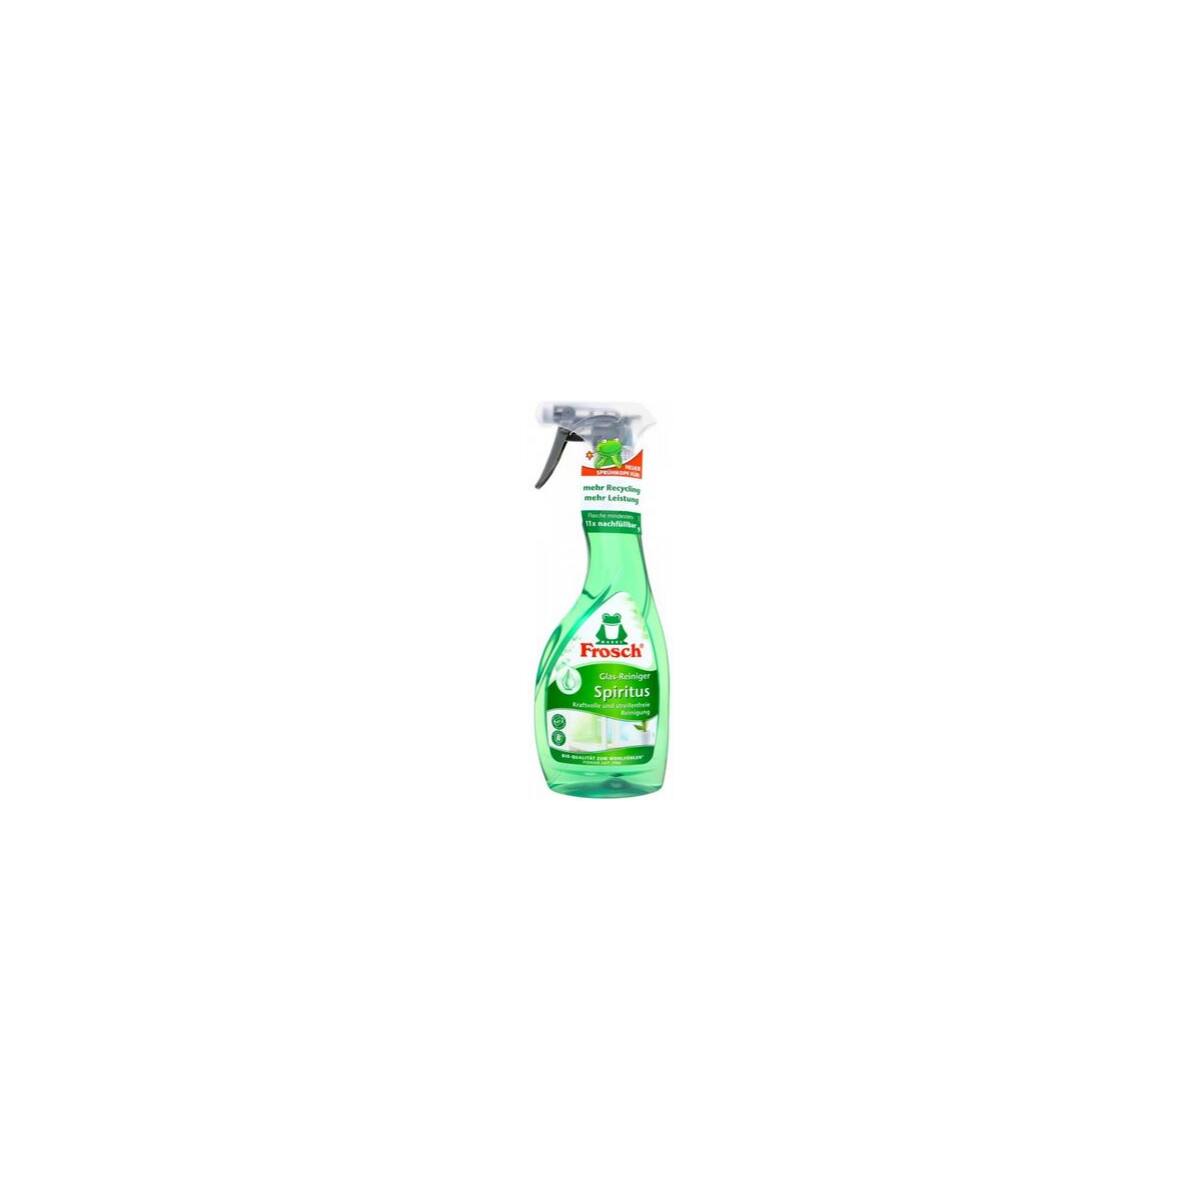 Frosch Spiritus Glasreiniger Sprühflasche 500 ml, 2,32 €